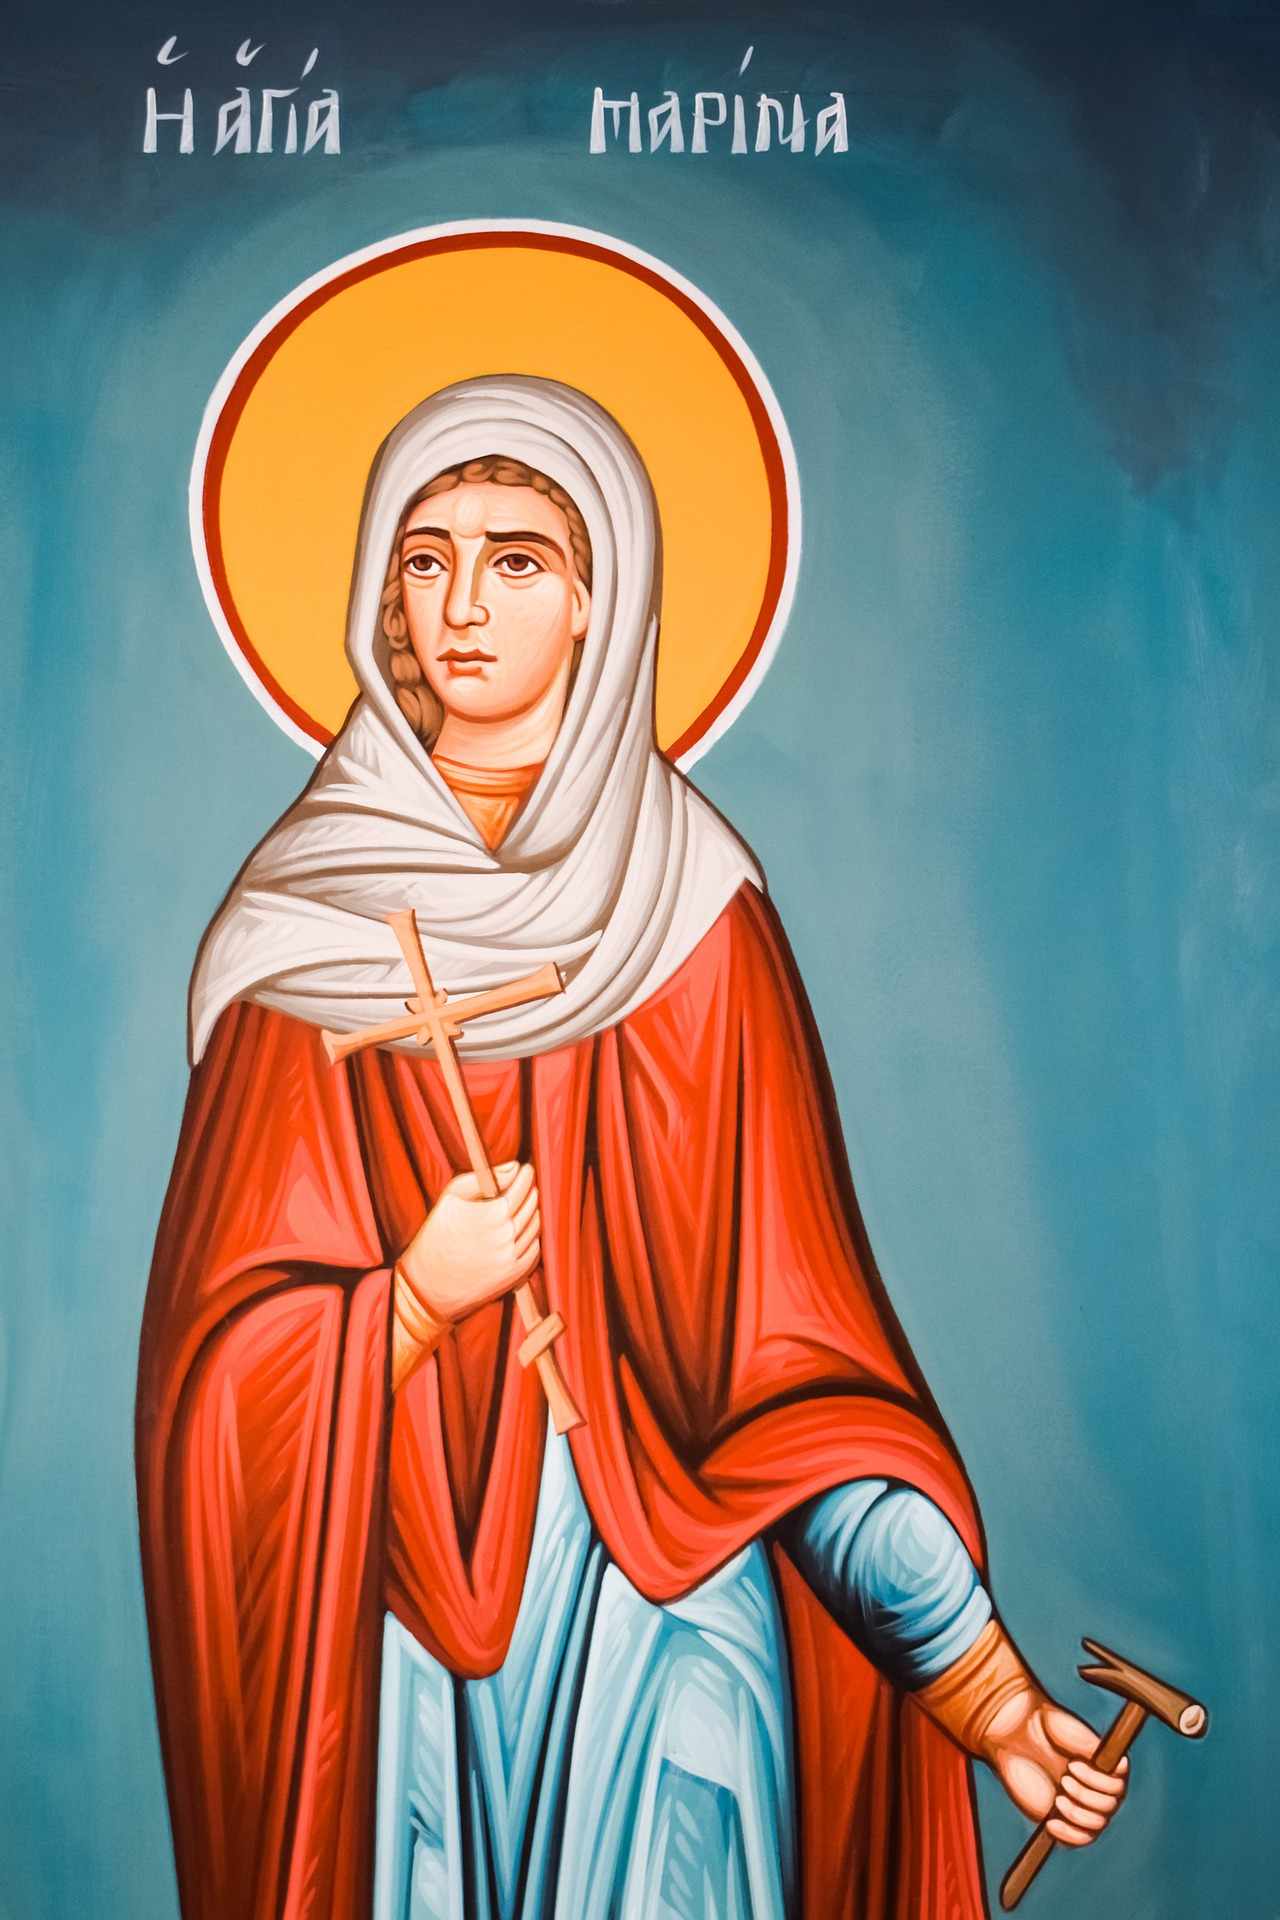 Η "Αγία Μαρίνα Μηρμυκώφ " δεσπόζει στο χωριό Μηρμυκώφου